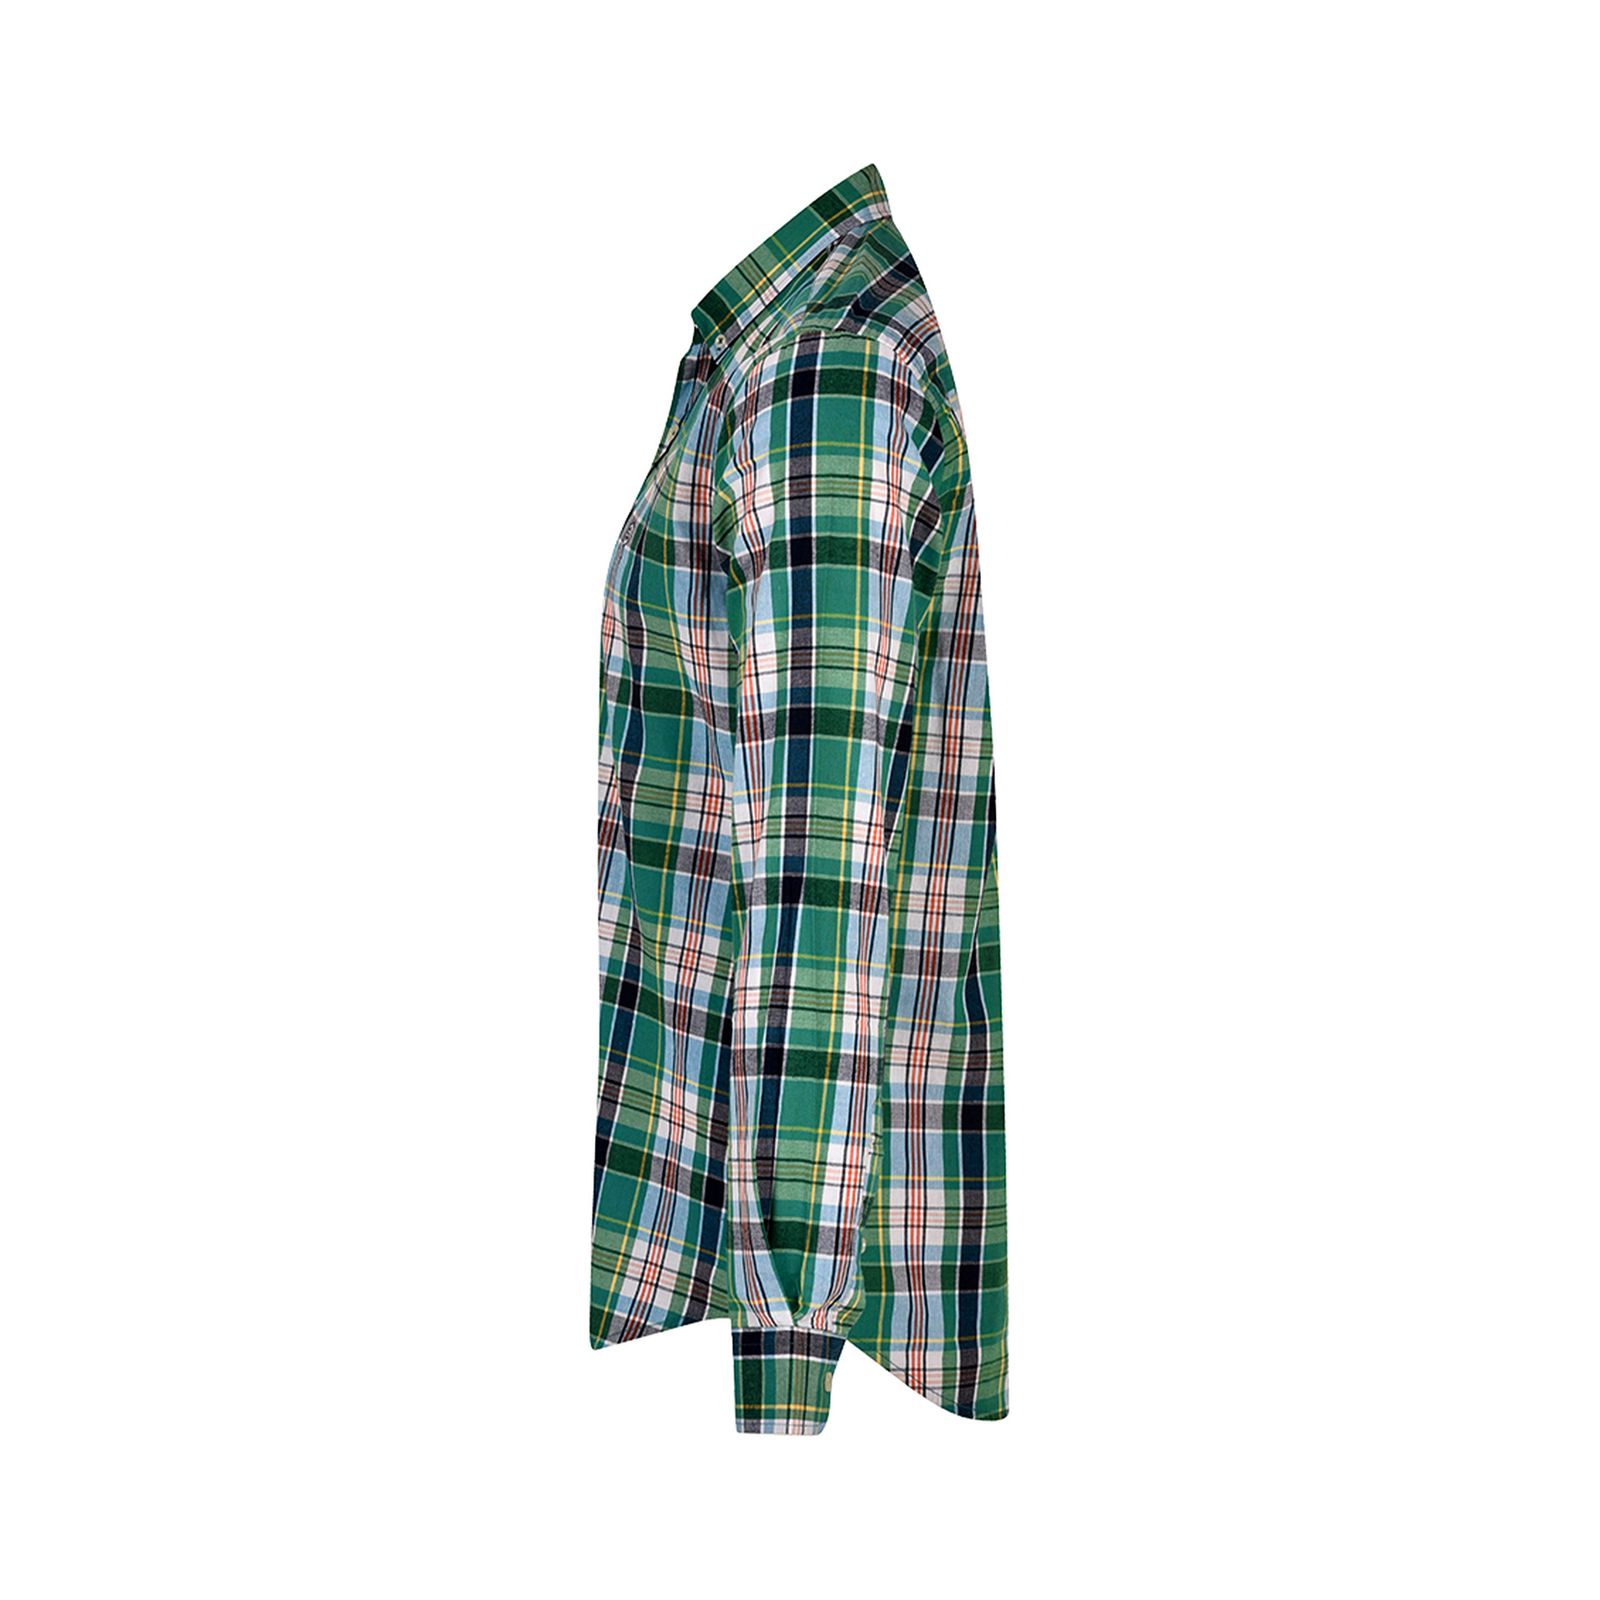 پیراهن آستین بلند مردانه بادی اسپینر مدل 1129 کد 6 رنگ سبز -  - 2